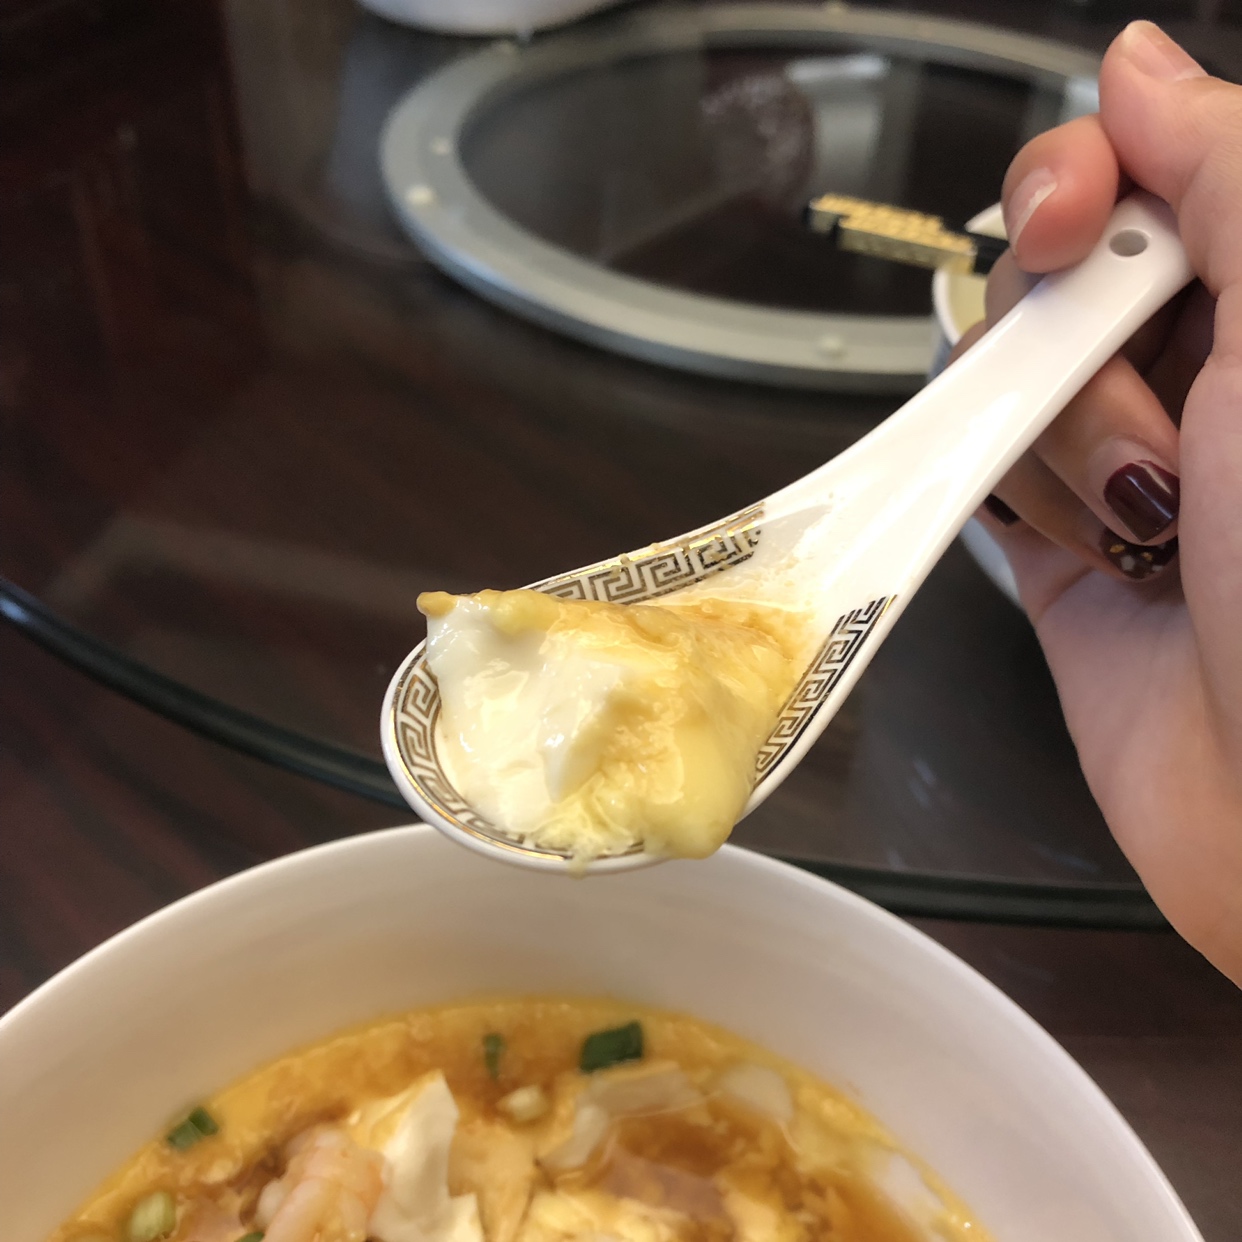 虾仁豆腐蒸水蛋